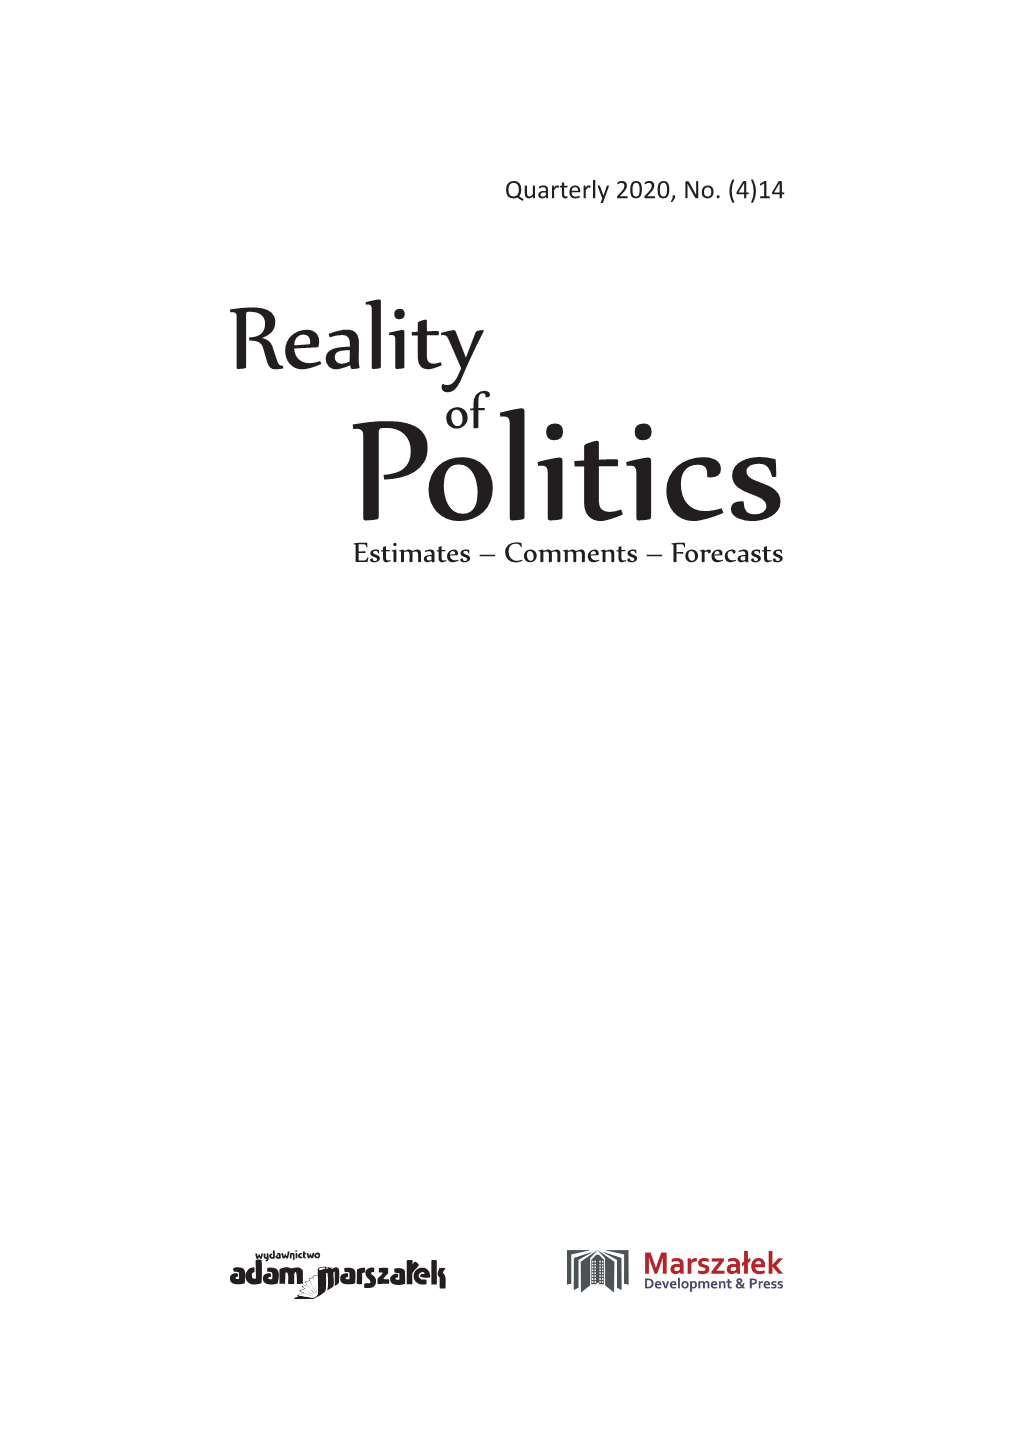 Quarterly 2020, No. (4)14 Address: Reality of Politics Instytut Nauk O Polityce Estimates – Comments – Forecasts I Bezpieczeństwie, Uniwersytet Szczeciński, Ul